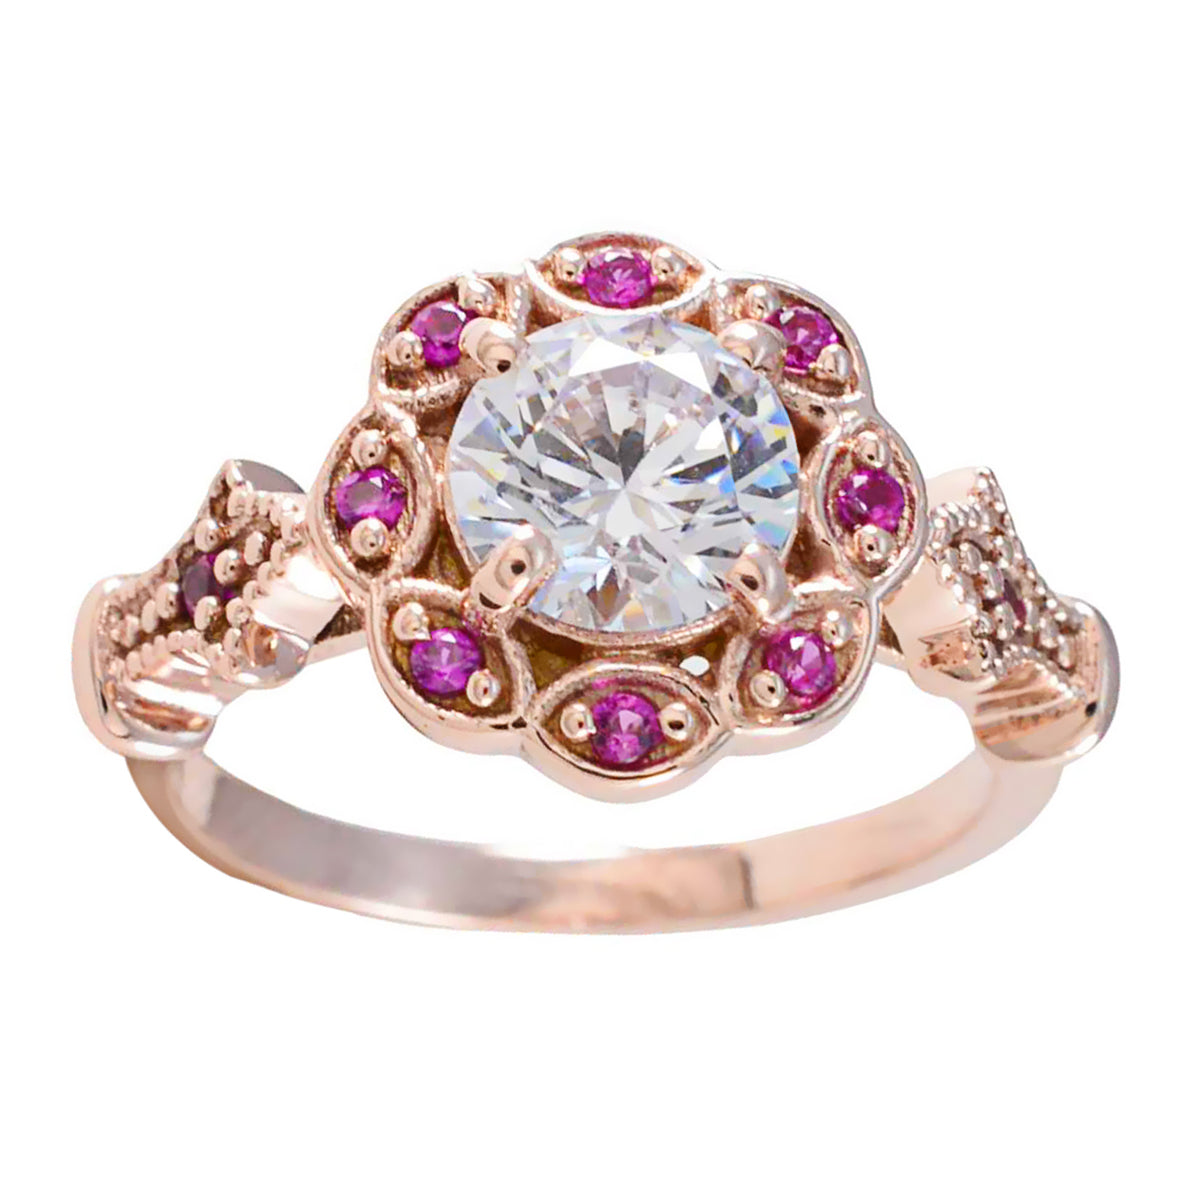 riyo attraente anello in argento con placcatura in oro rosa rubino cz pietra a forma rotonda con montatura a punta anello per anniversario di gioielli da sposa